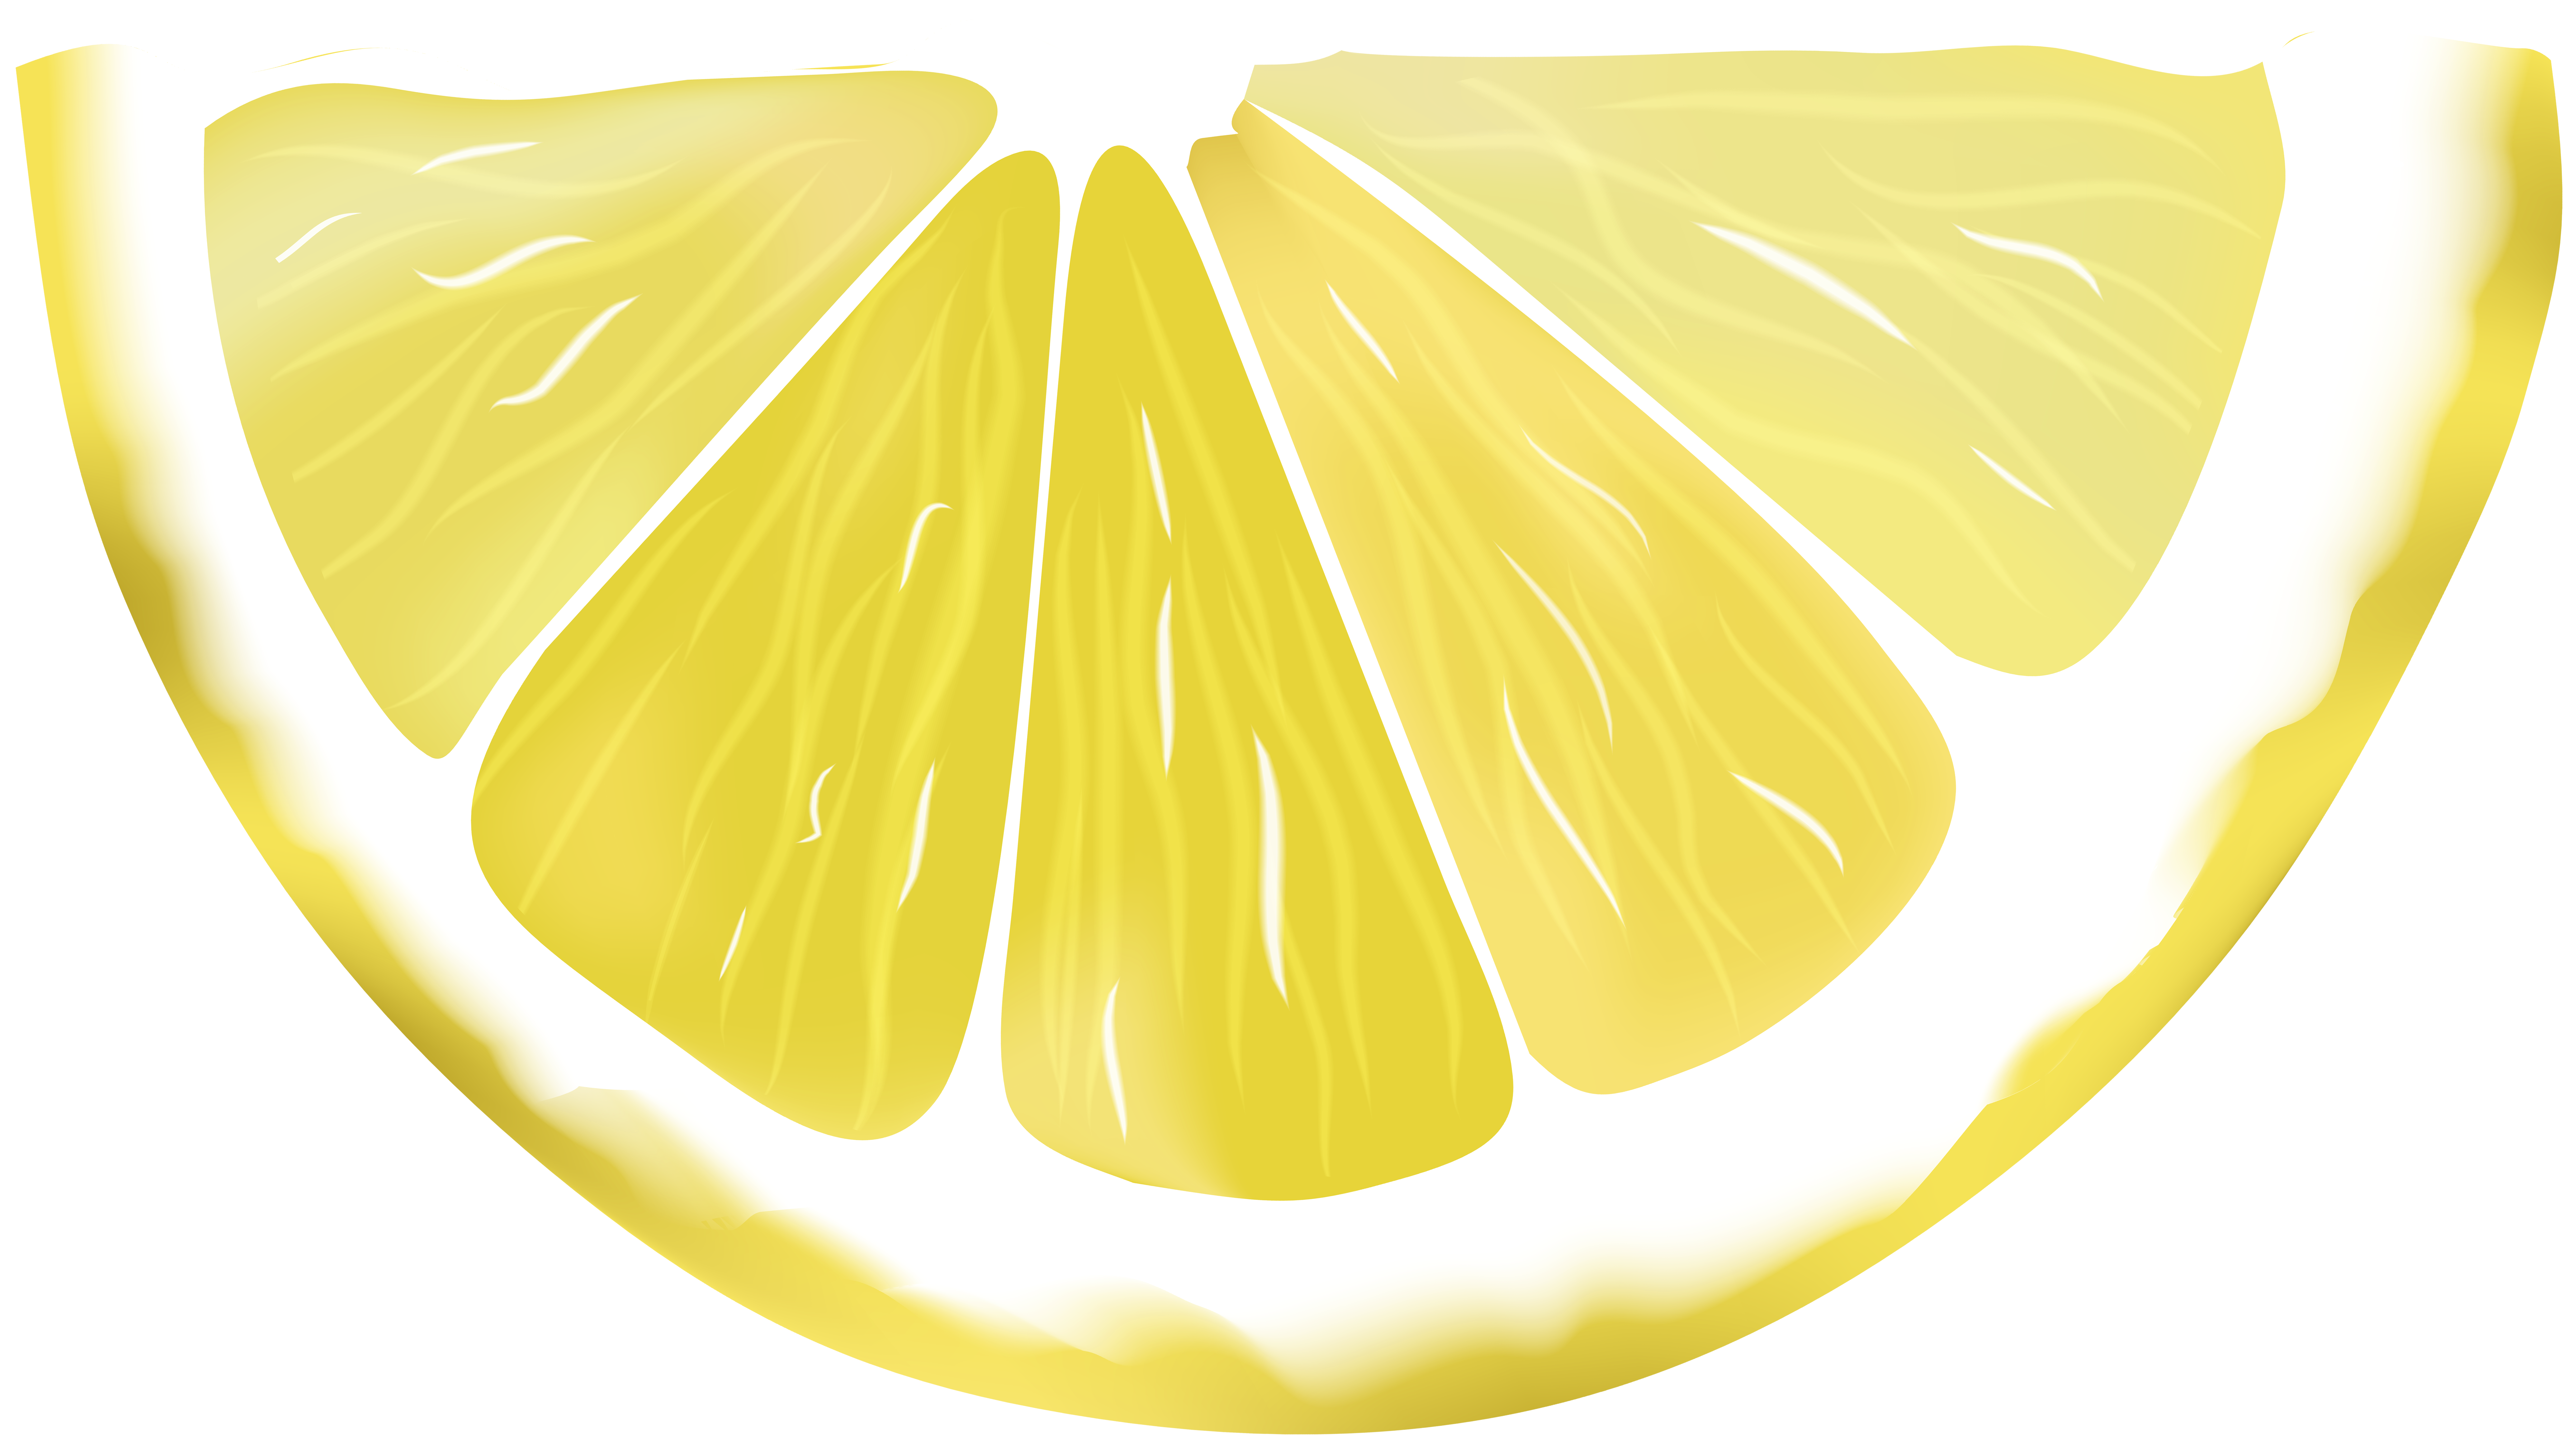 lemons-clipart-border-lemons-border-transparent-free-for-download-on